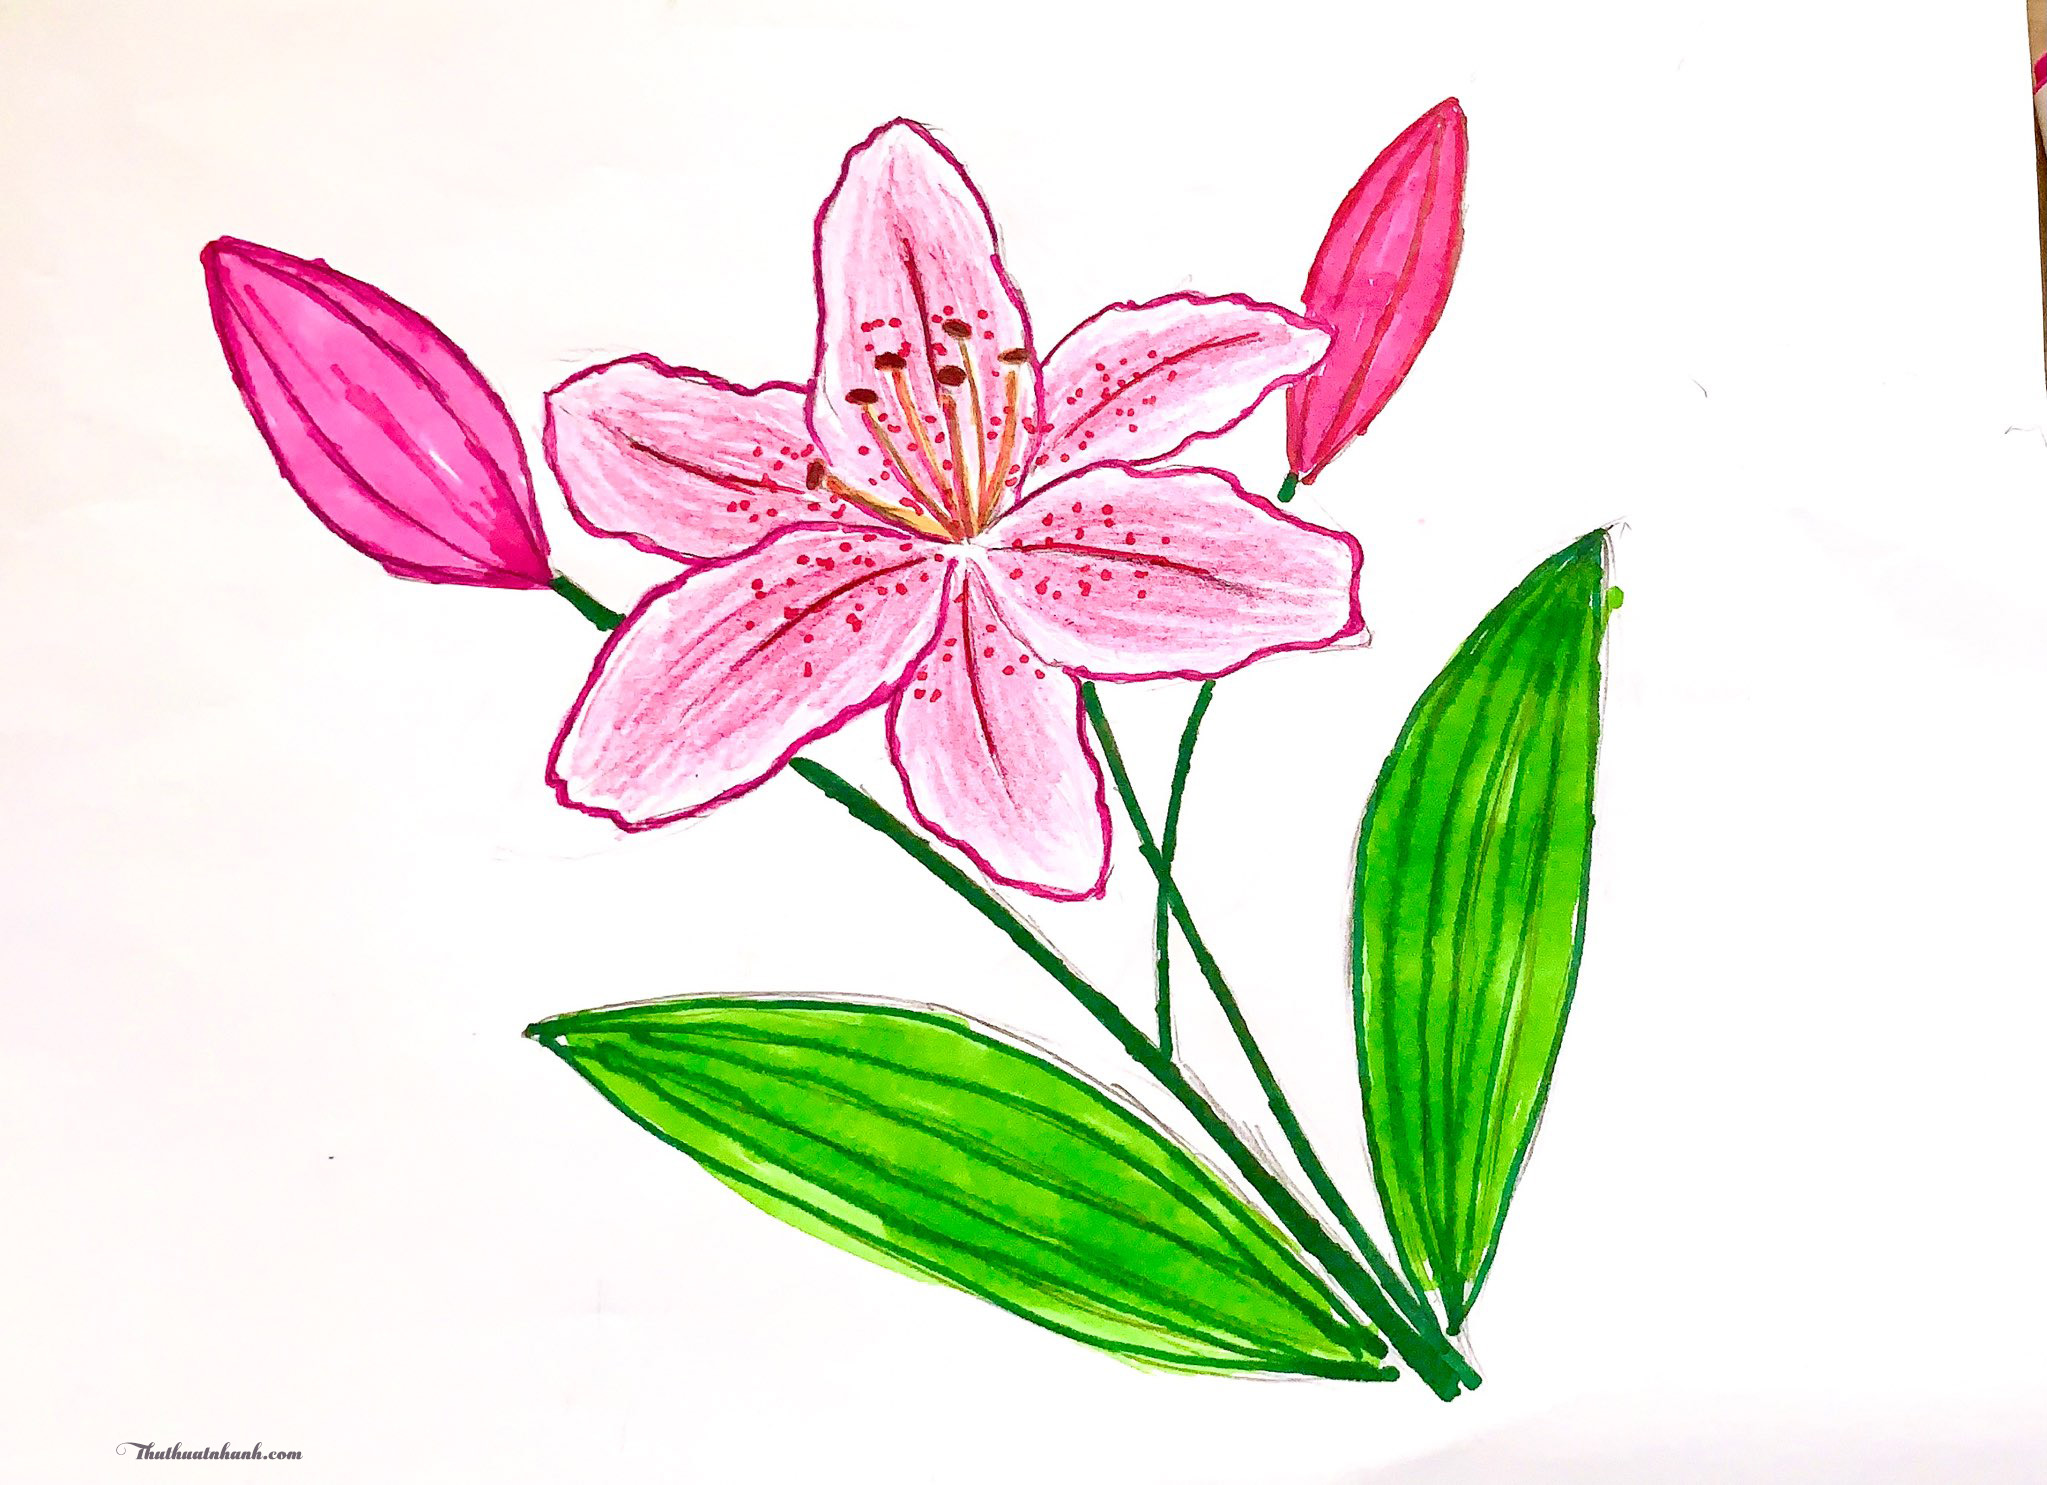 Chia sẻ hơn 54 về hình vẽ hoa đẹp đơn giản  cdgdbentreeduvn